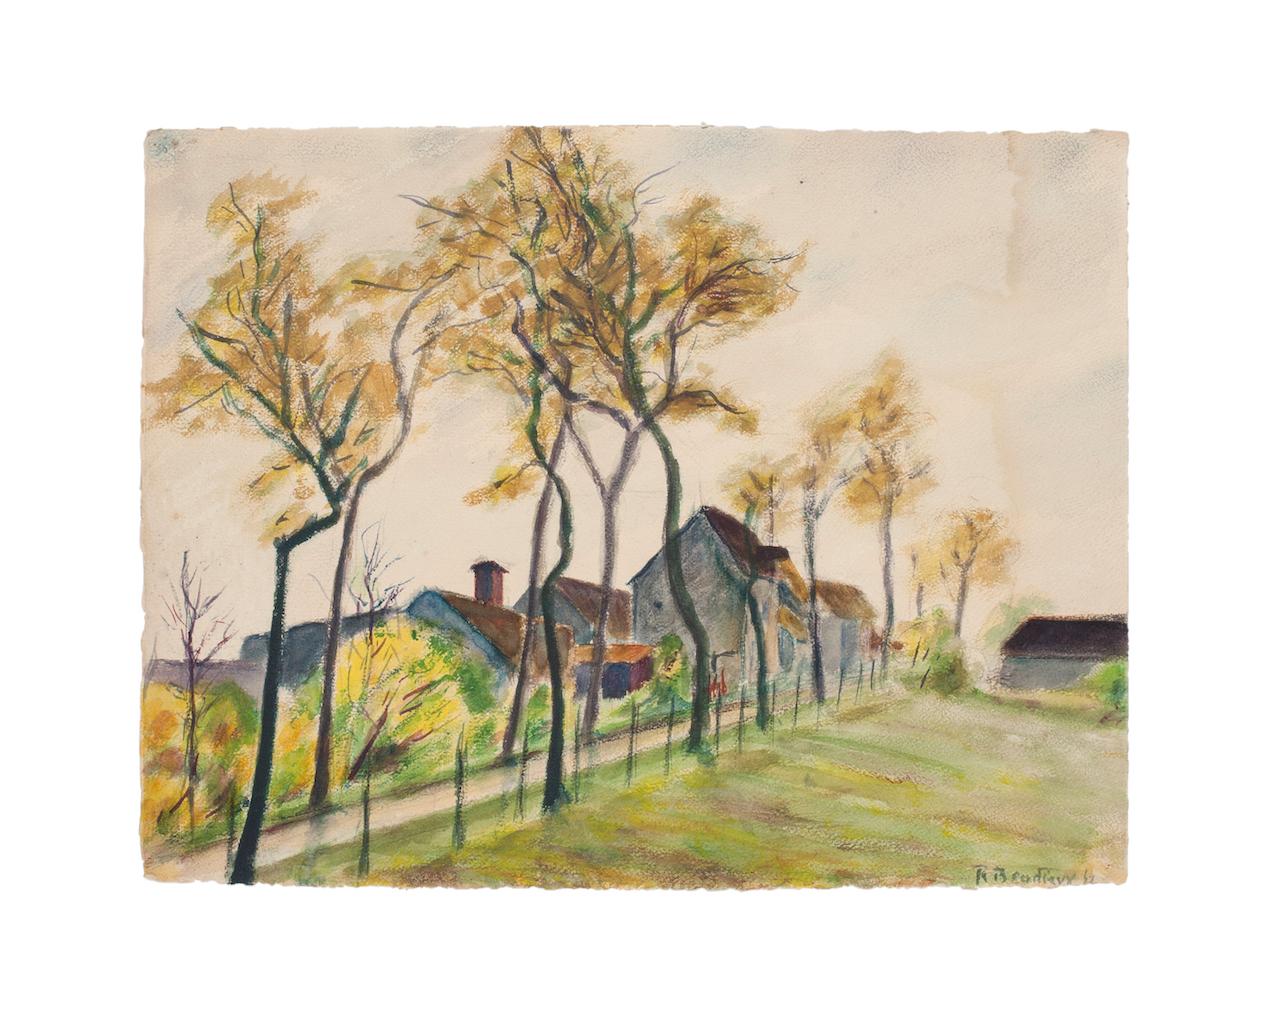 Landscape - Original watercolor by A.R. Brudieux - 1945